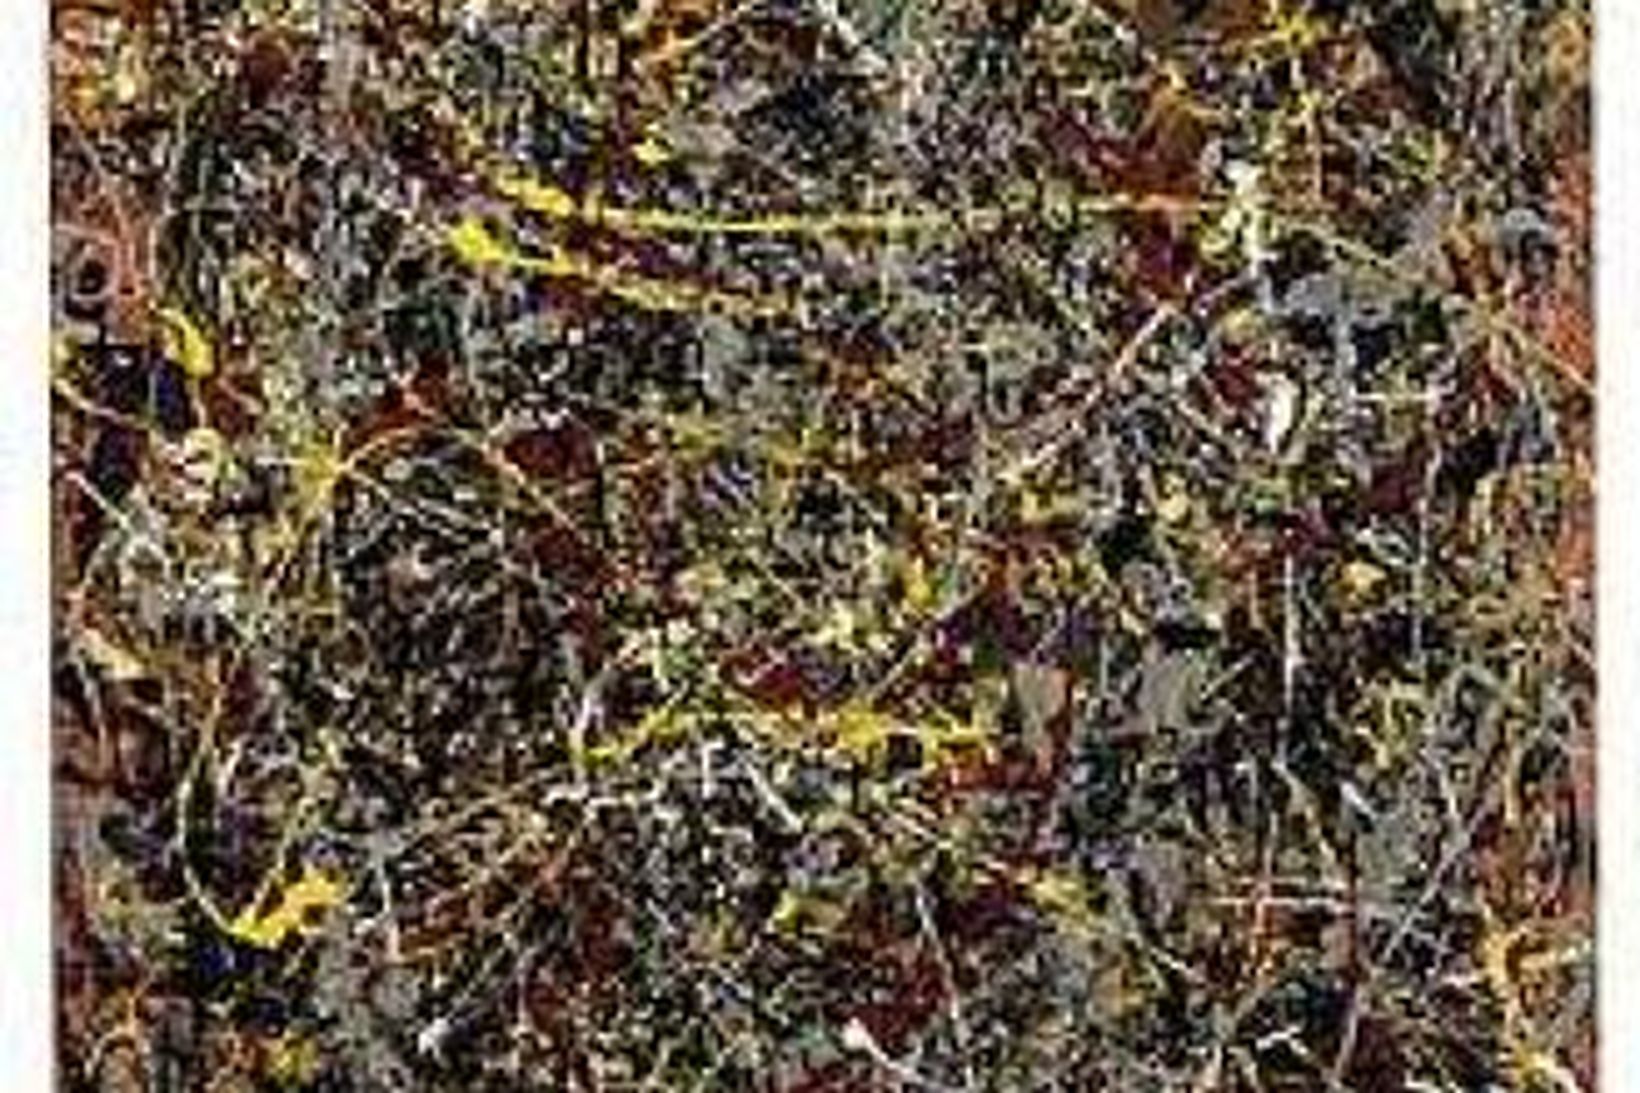 Annað verk eftir Pollock